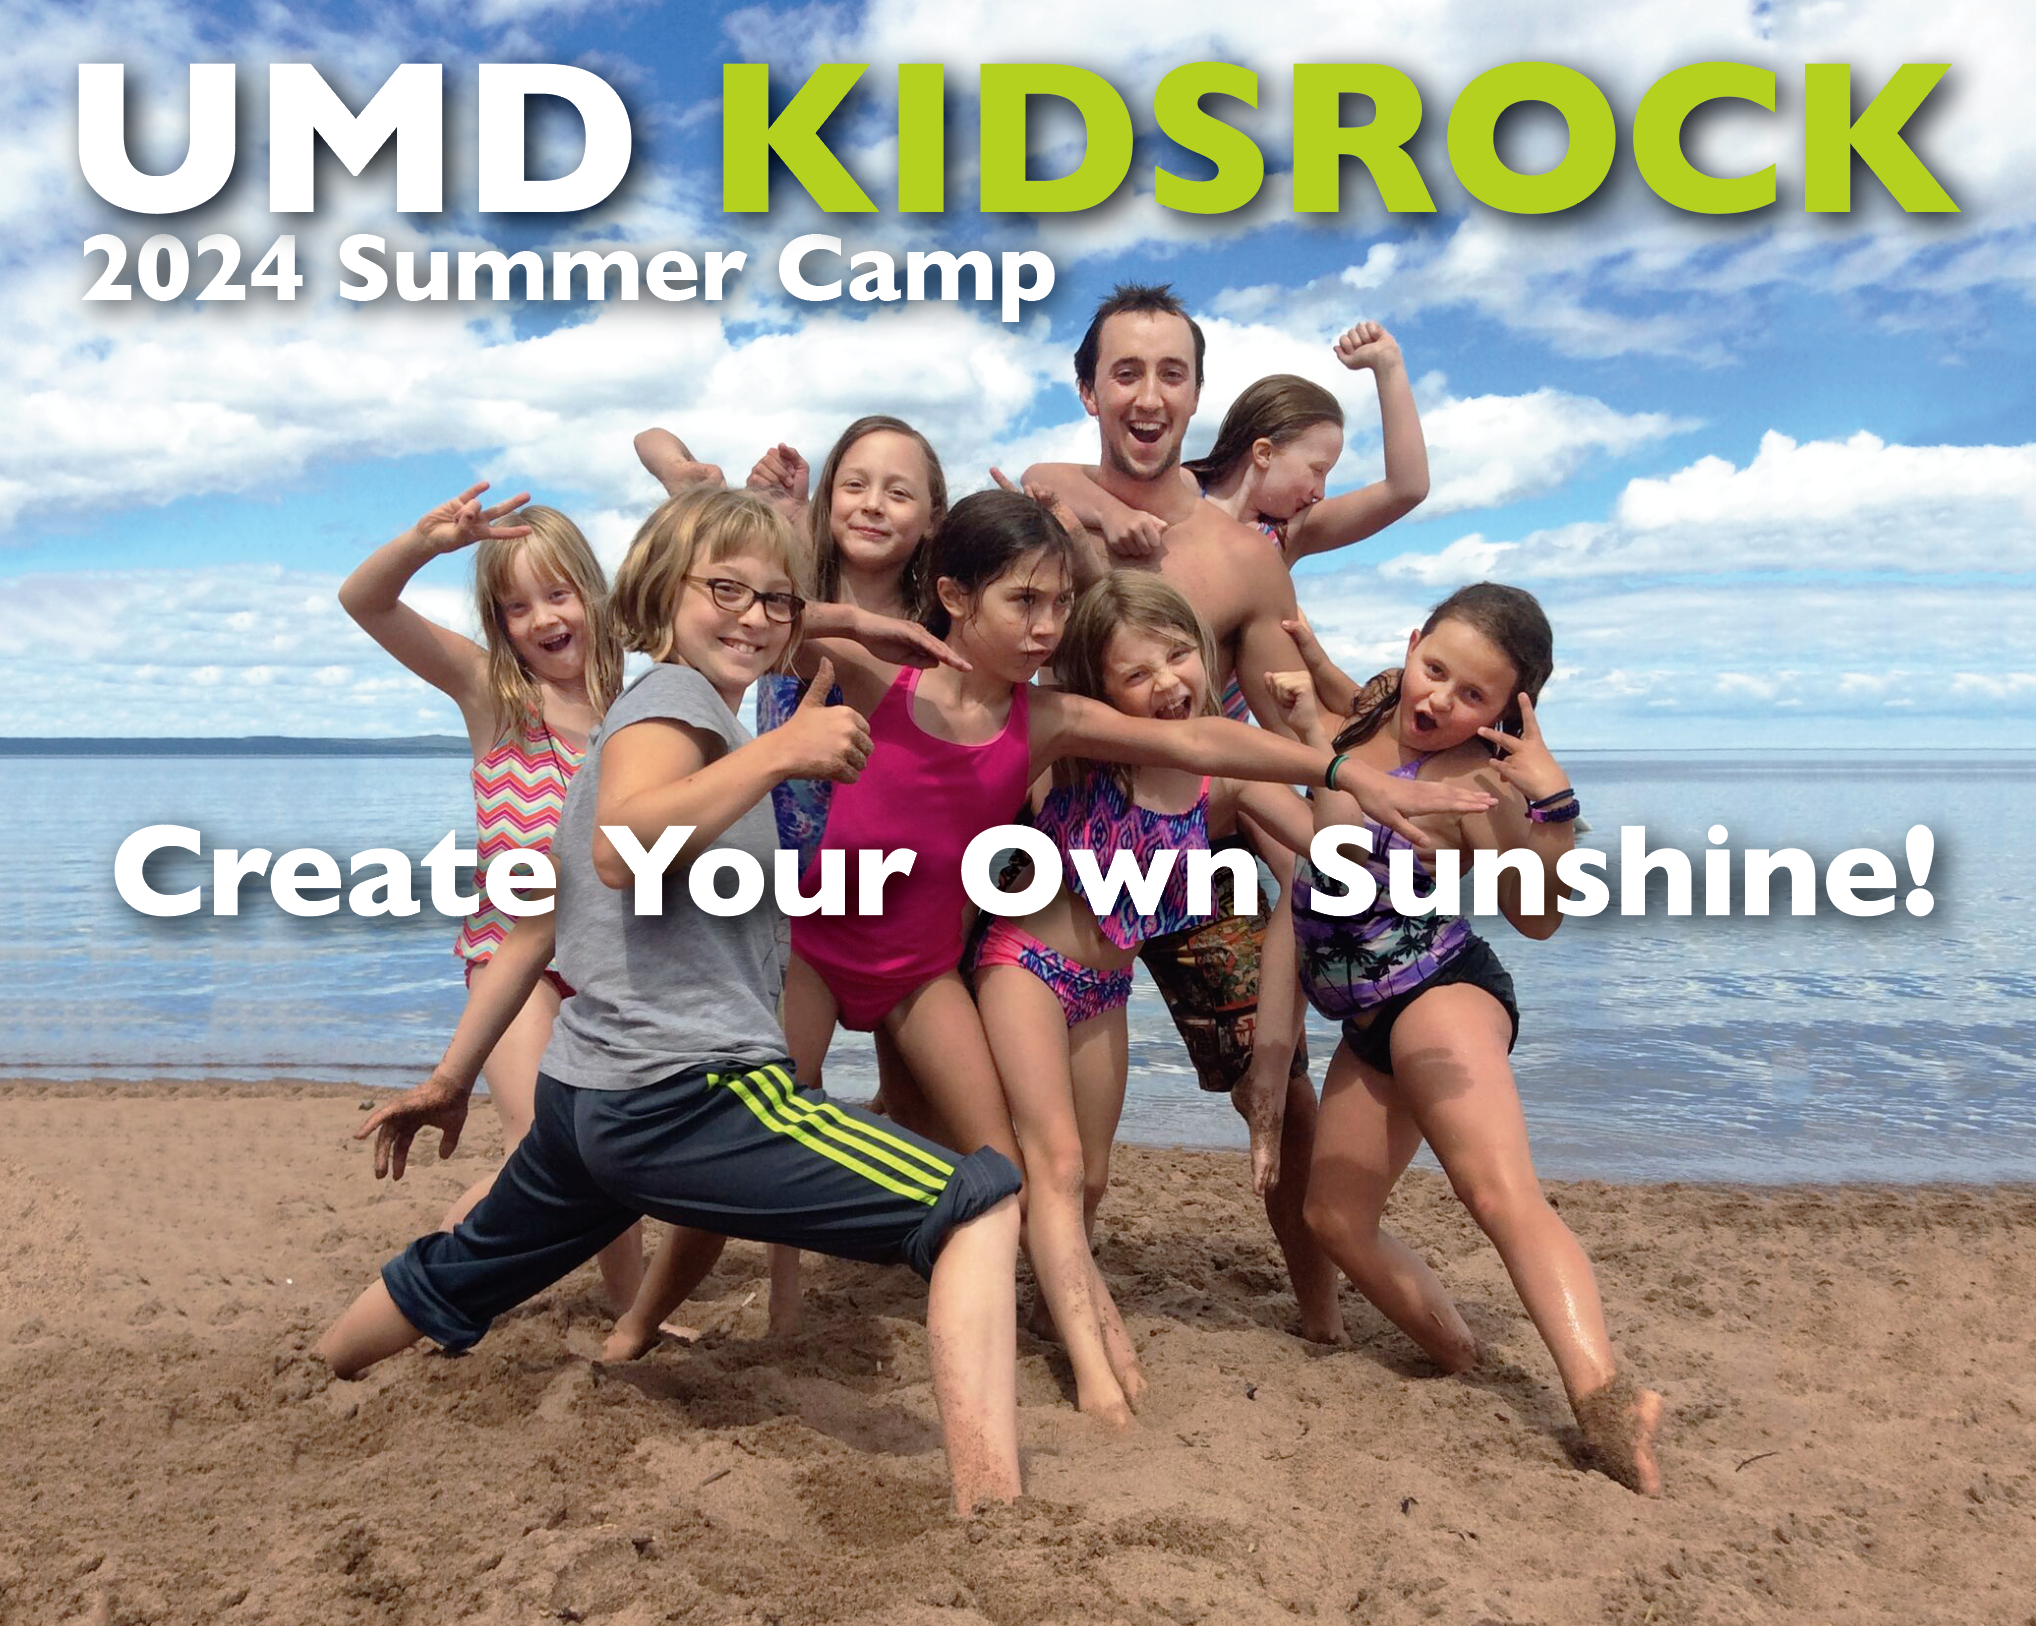 UMD KIDSROCK 2024 Summer Camp